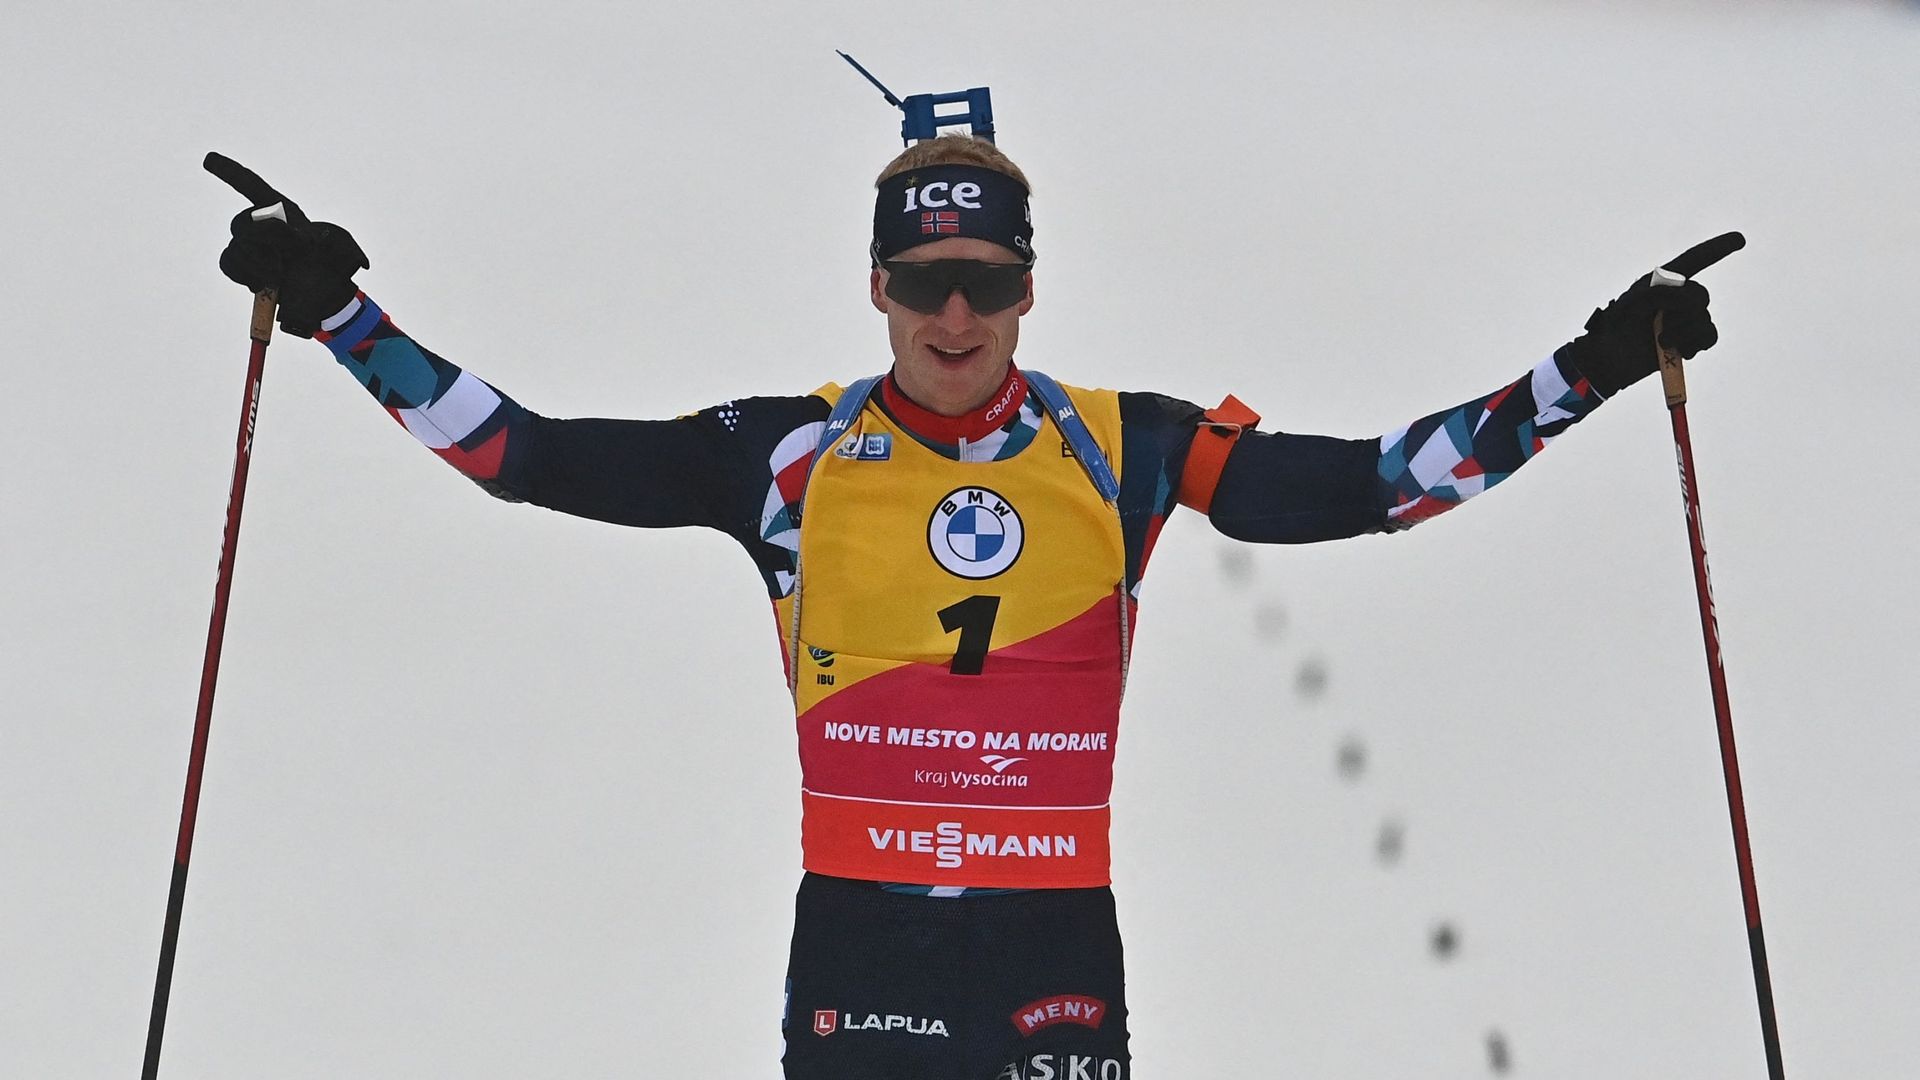 Johannes Thingnes Boe a remporté le sprint des finales de la Coupe du monde de biathlon, jeudi, à Oslo Holmenkollen.